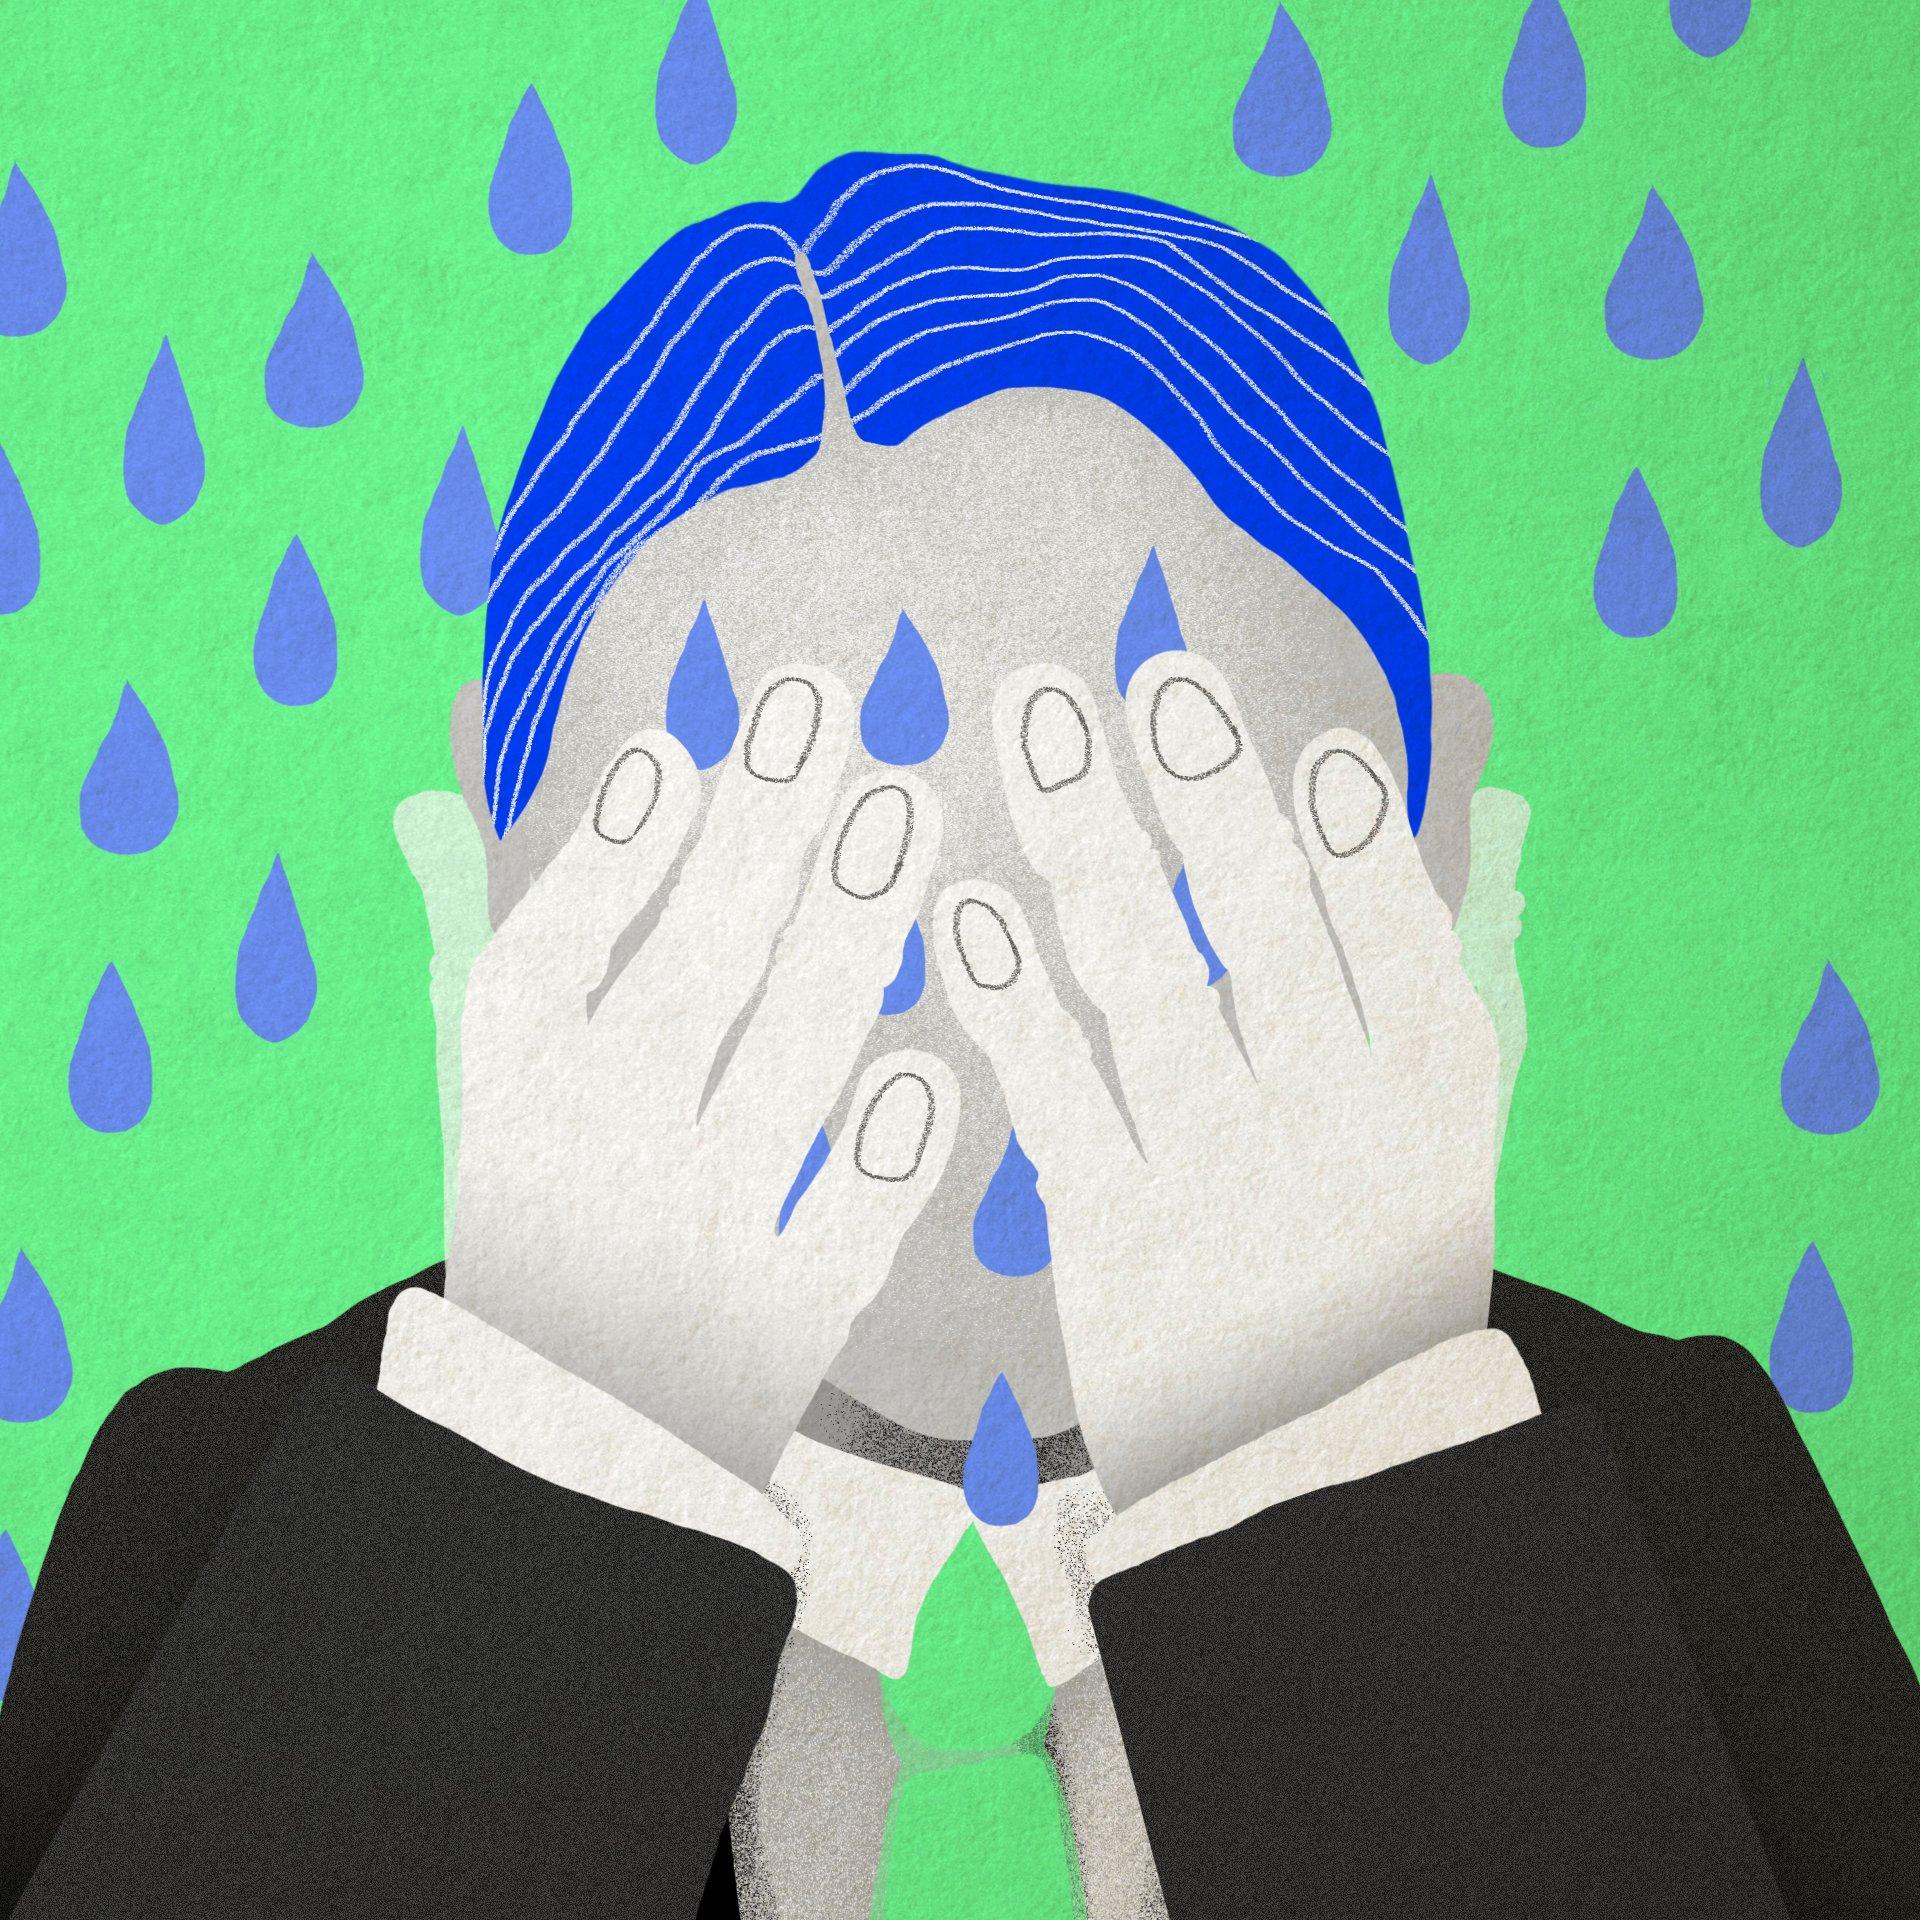 Ilustracja przedstawiająca mężczyznę, który płacze, zasłaniając twarz dłońmi. Z góry spadają krople wody.